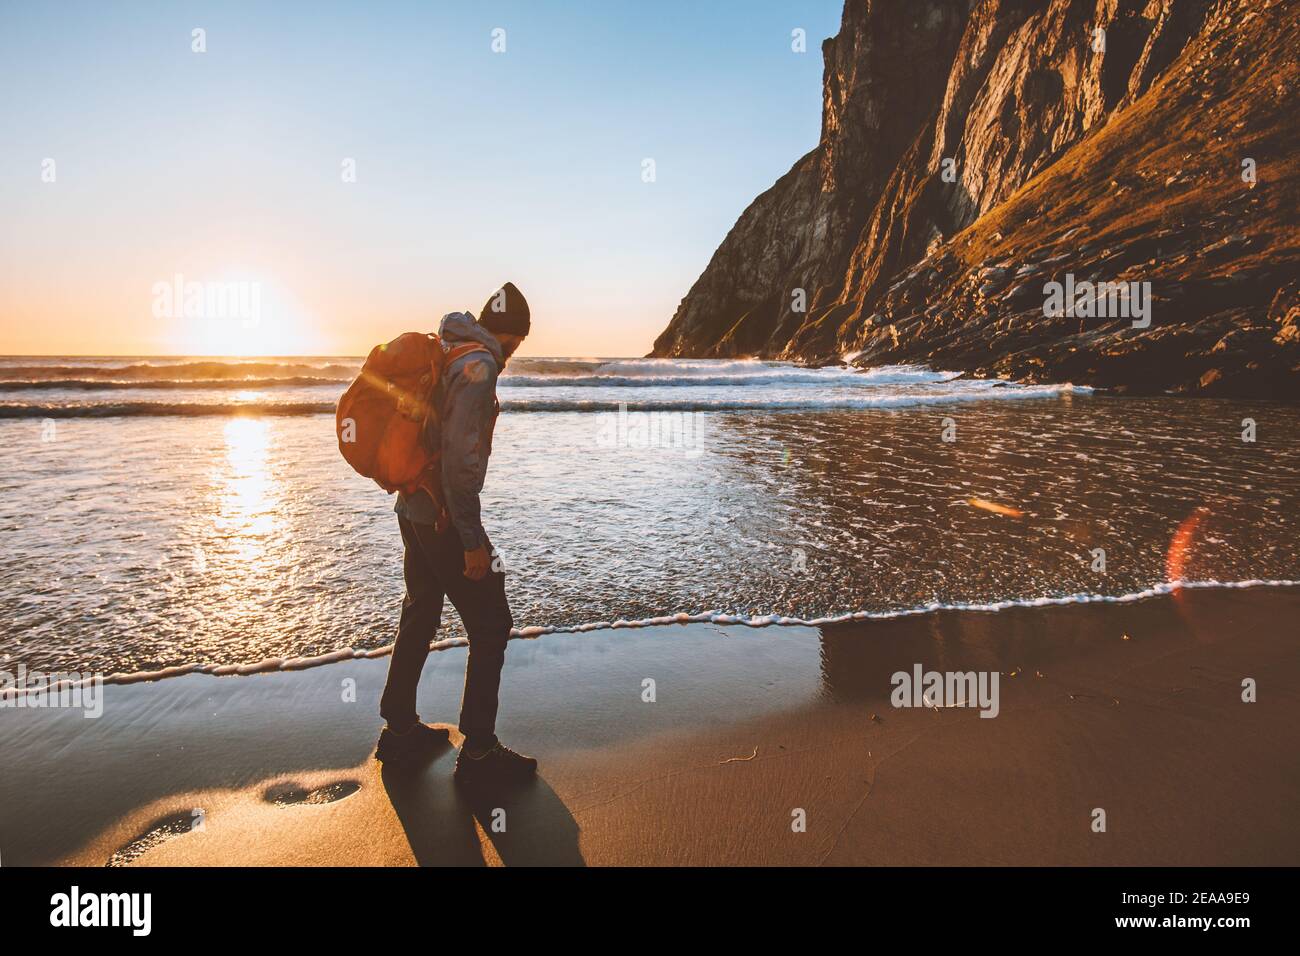 Mann unterwegs Wandern mit Rucksack am Sandstrand Sonnenuntergang Ozean Sehen Sie Abenteuer Lifestyle Aktivurlaub Outdoor-Solo-Reise in Norwegen Stockfoto